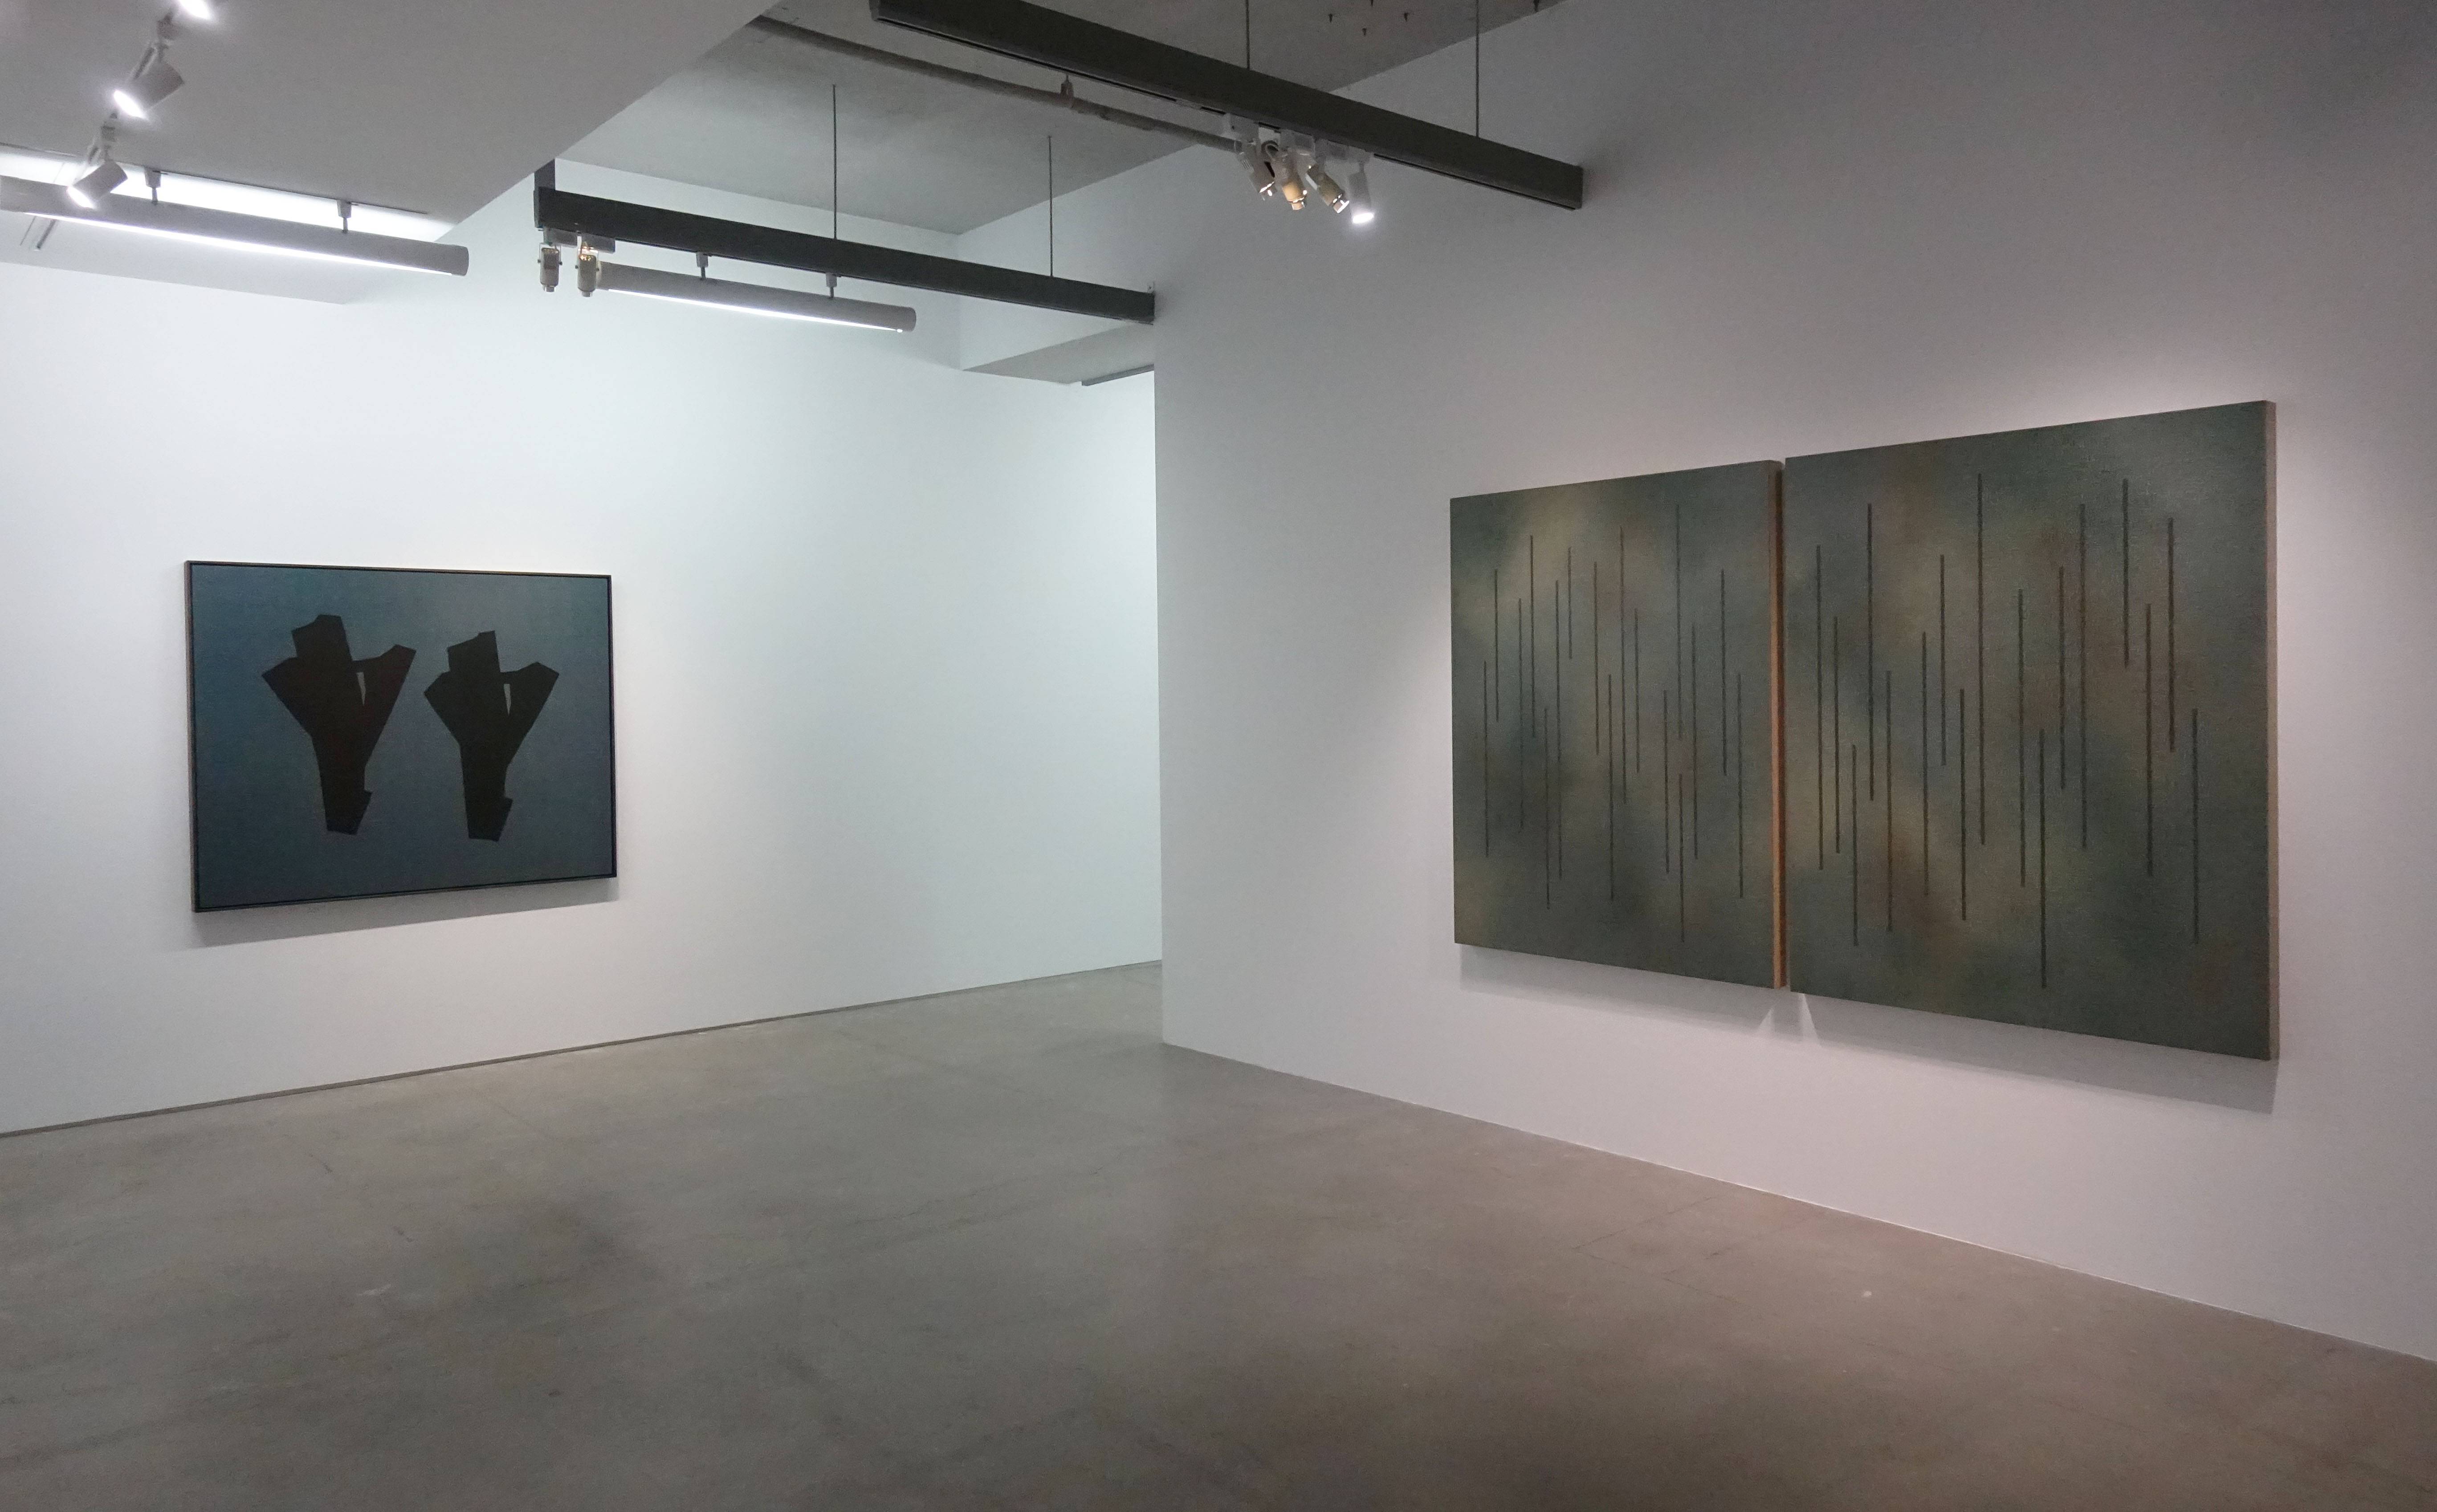 双方藝廊「未定物-吳東龍個展」一樓空間展覽一隅。